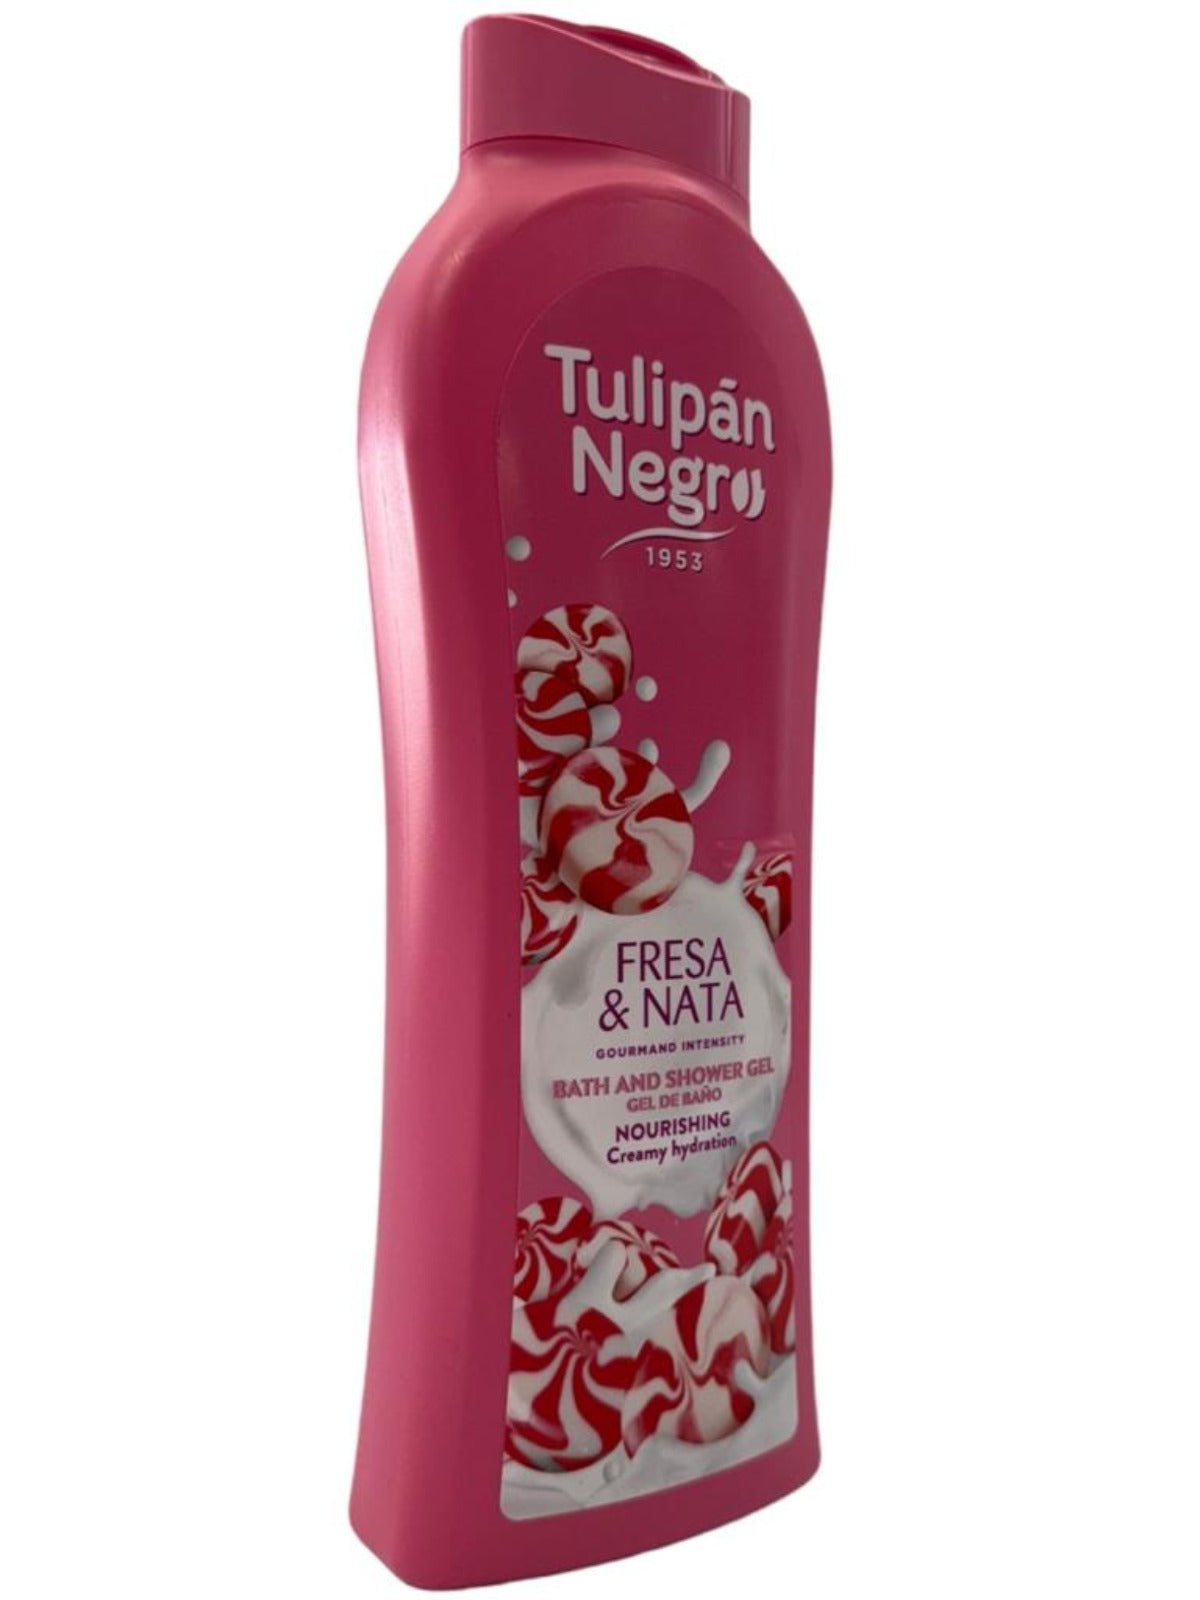 Tulipan Negro Strawberry & Cream Bath And Shower Gel 650ml